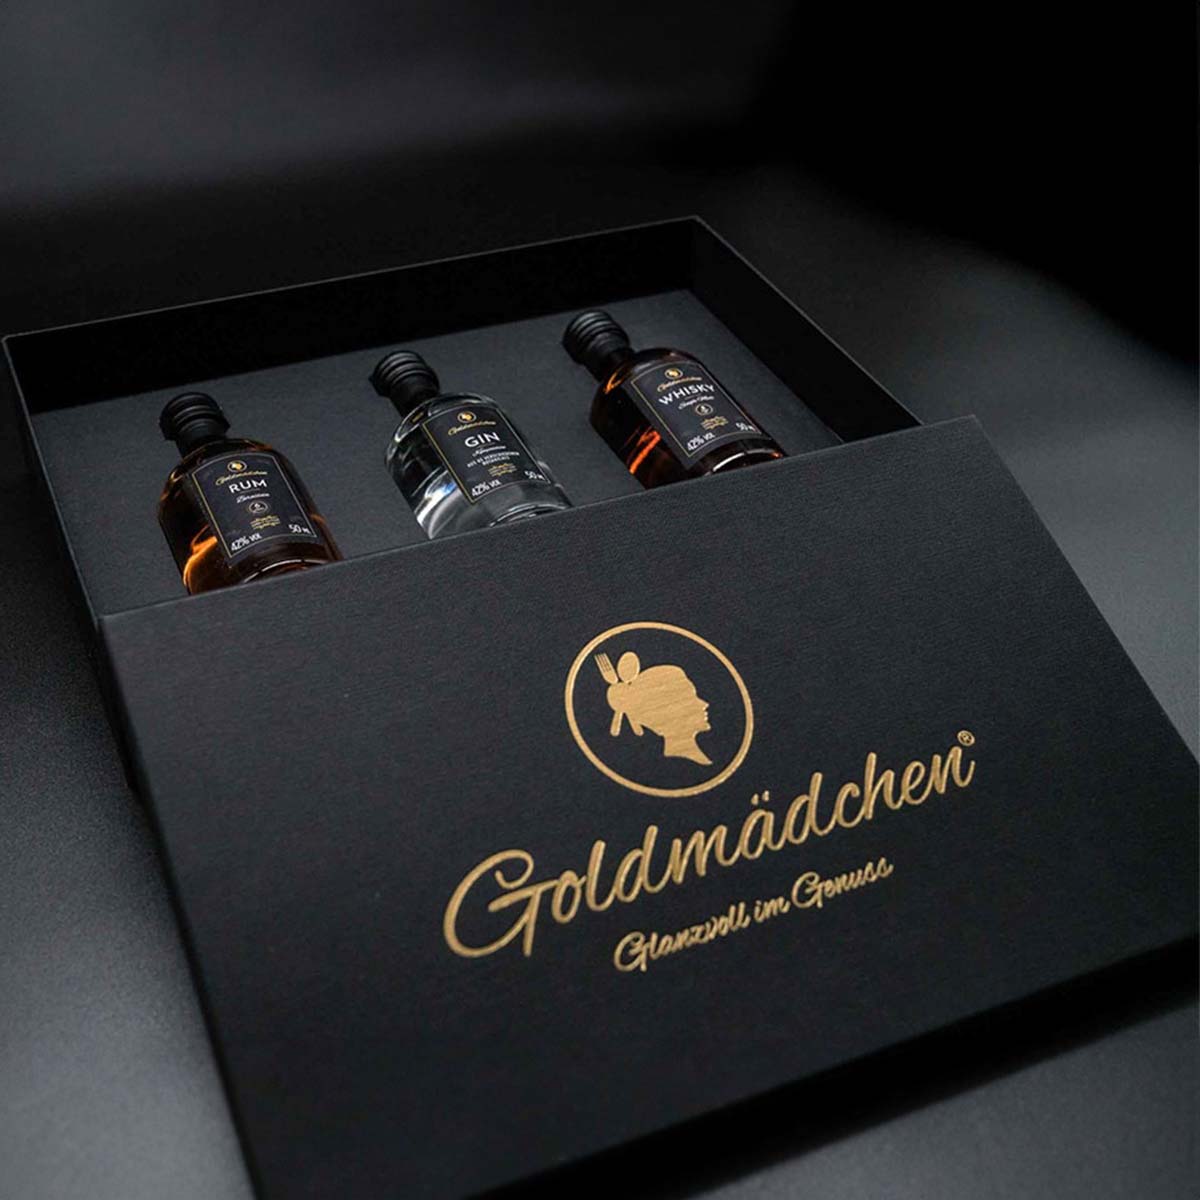 Goldmädchen Spirituosen 3x50ml - Geschenkbox - Goldmädchen-Shop